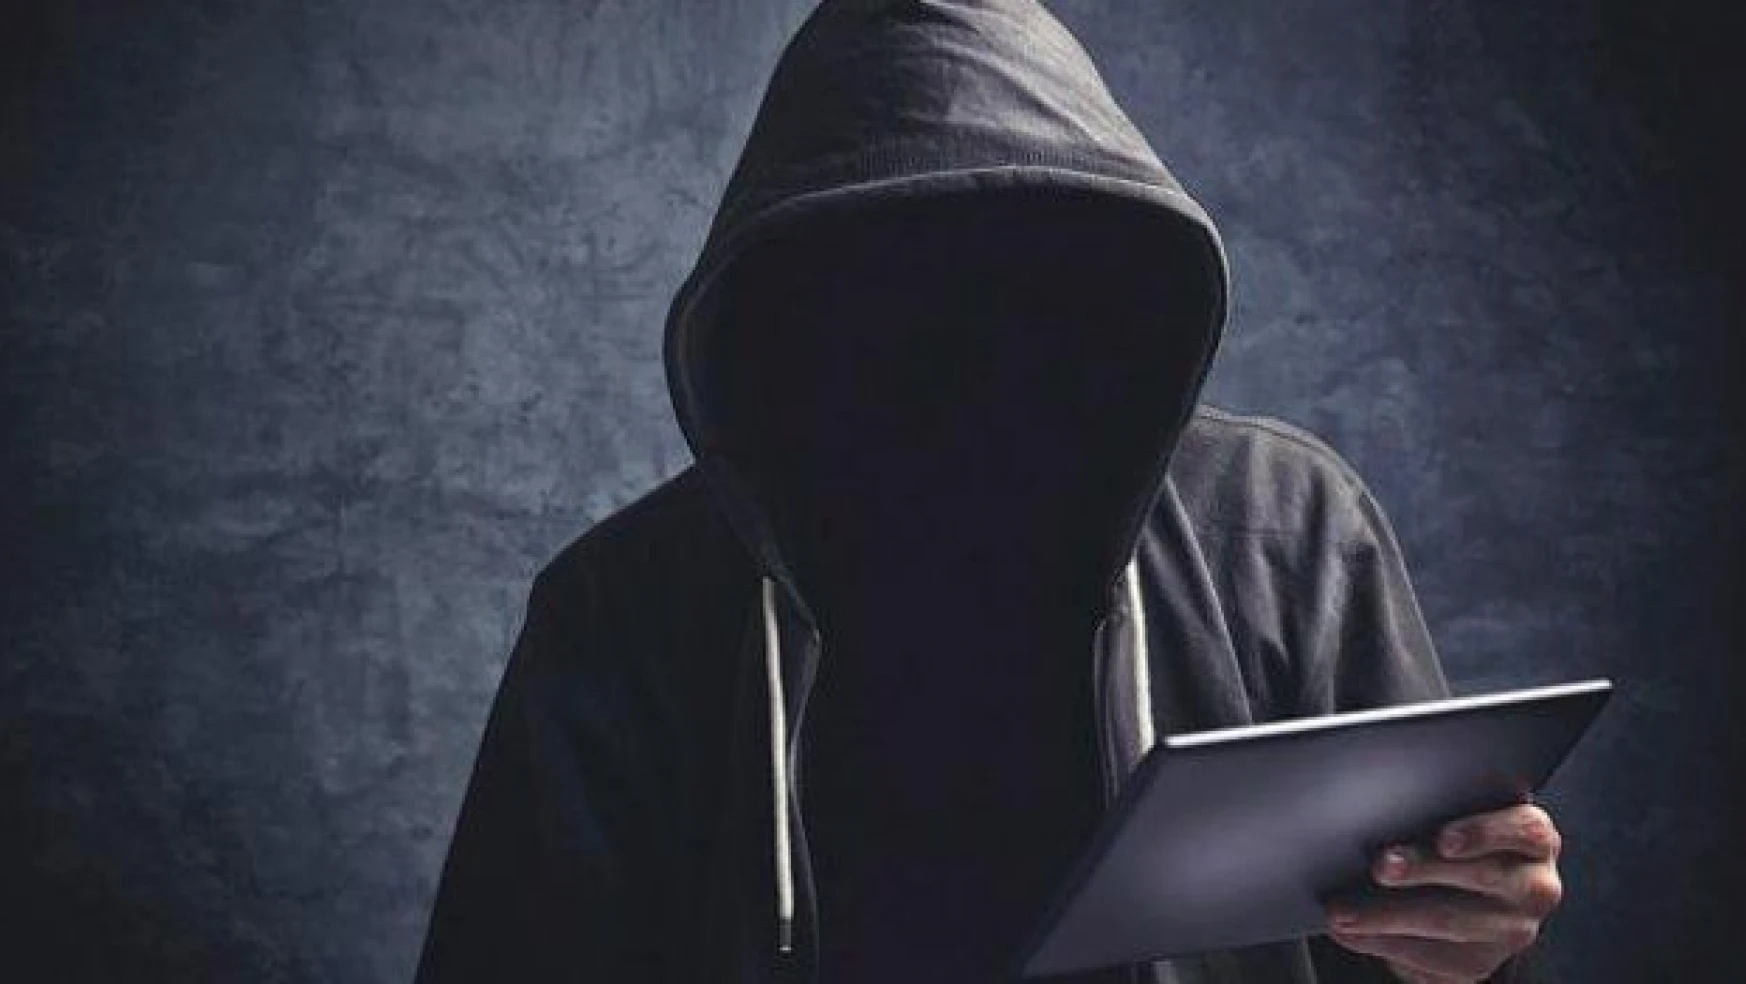 Rus hackerlar, Türk KOBİ'lere dosyaları sıkıştırma taktiği ile saldırıyor